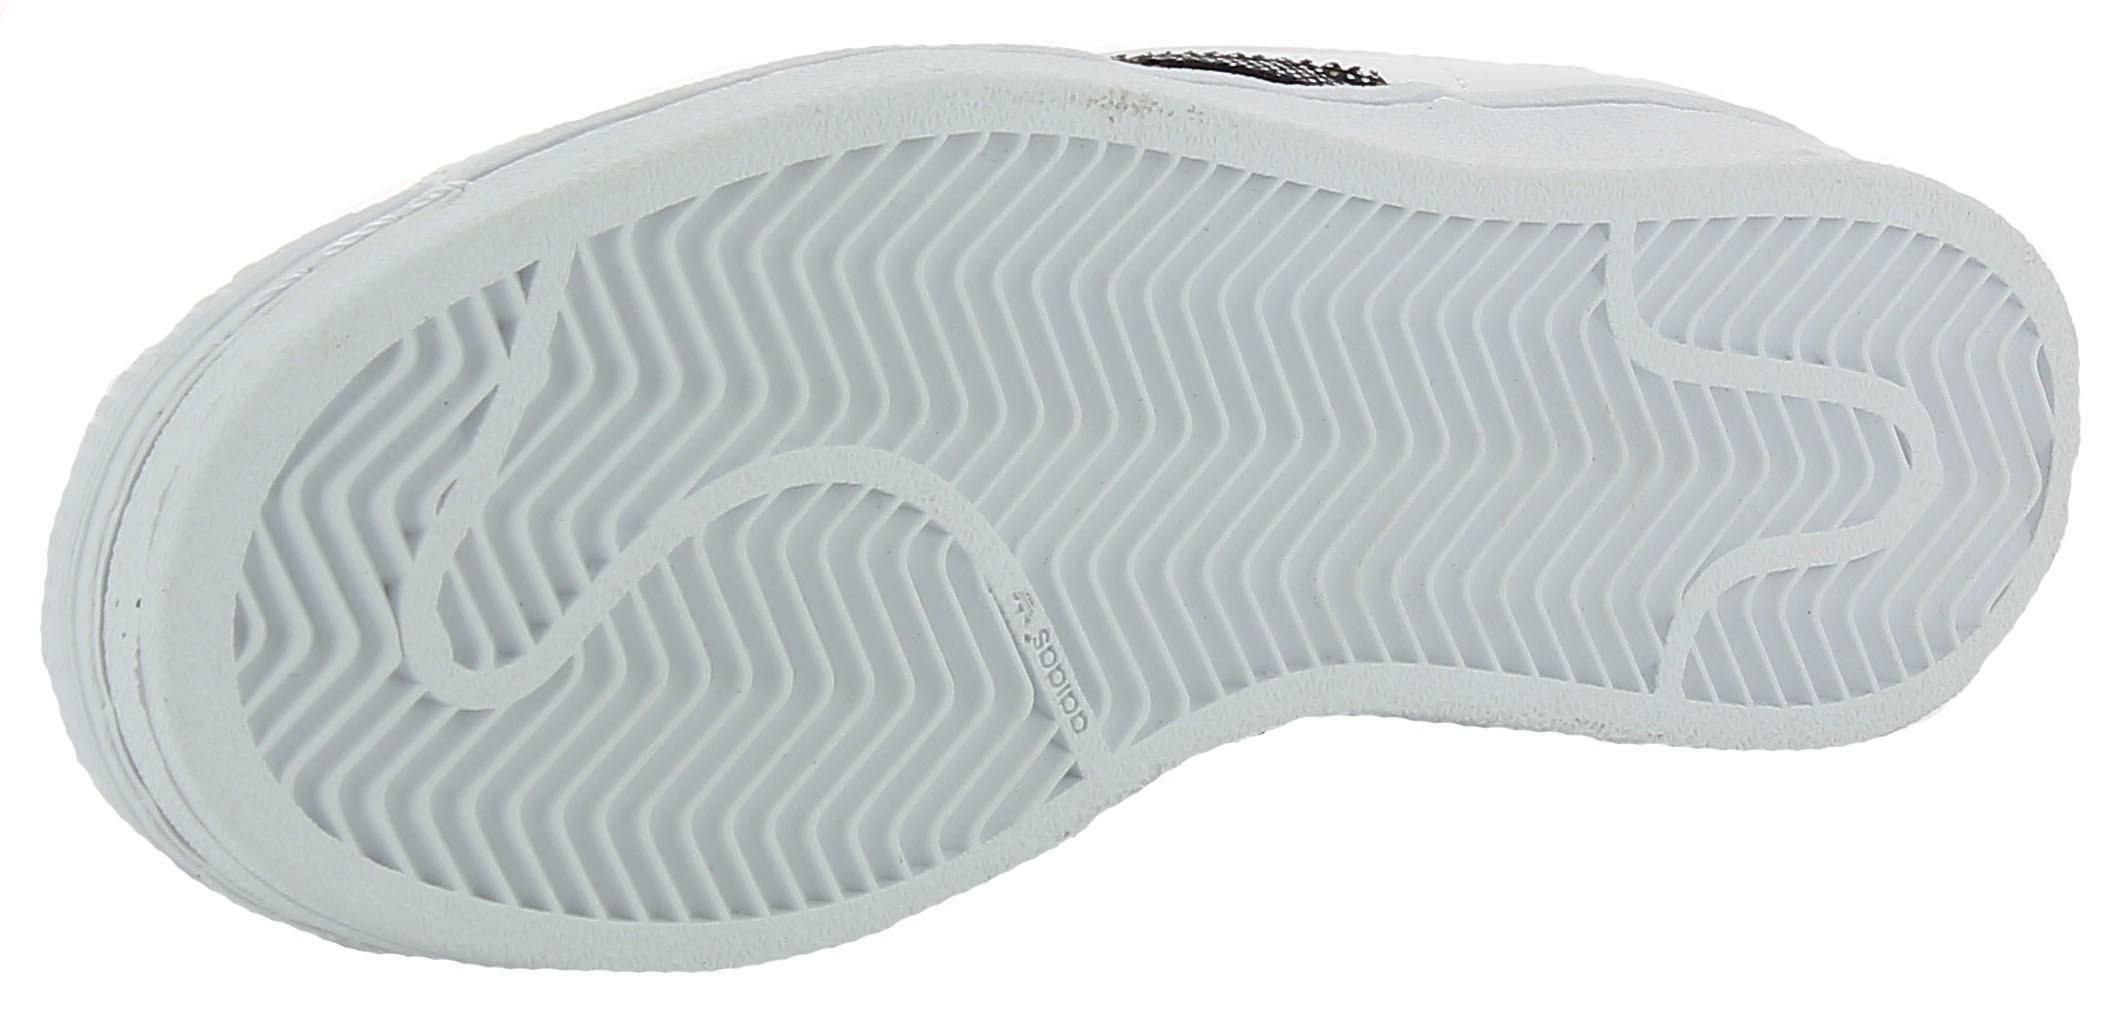 adidas adidas originals superstar w scarpe sportive donna bianche